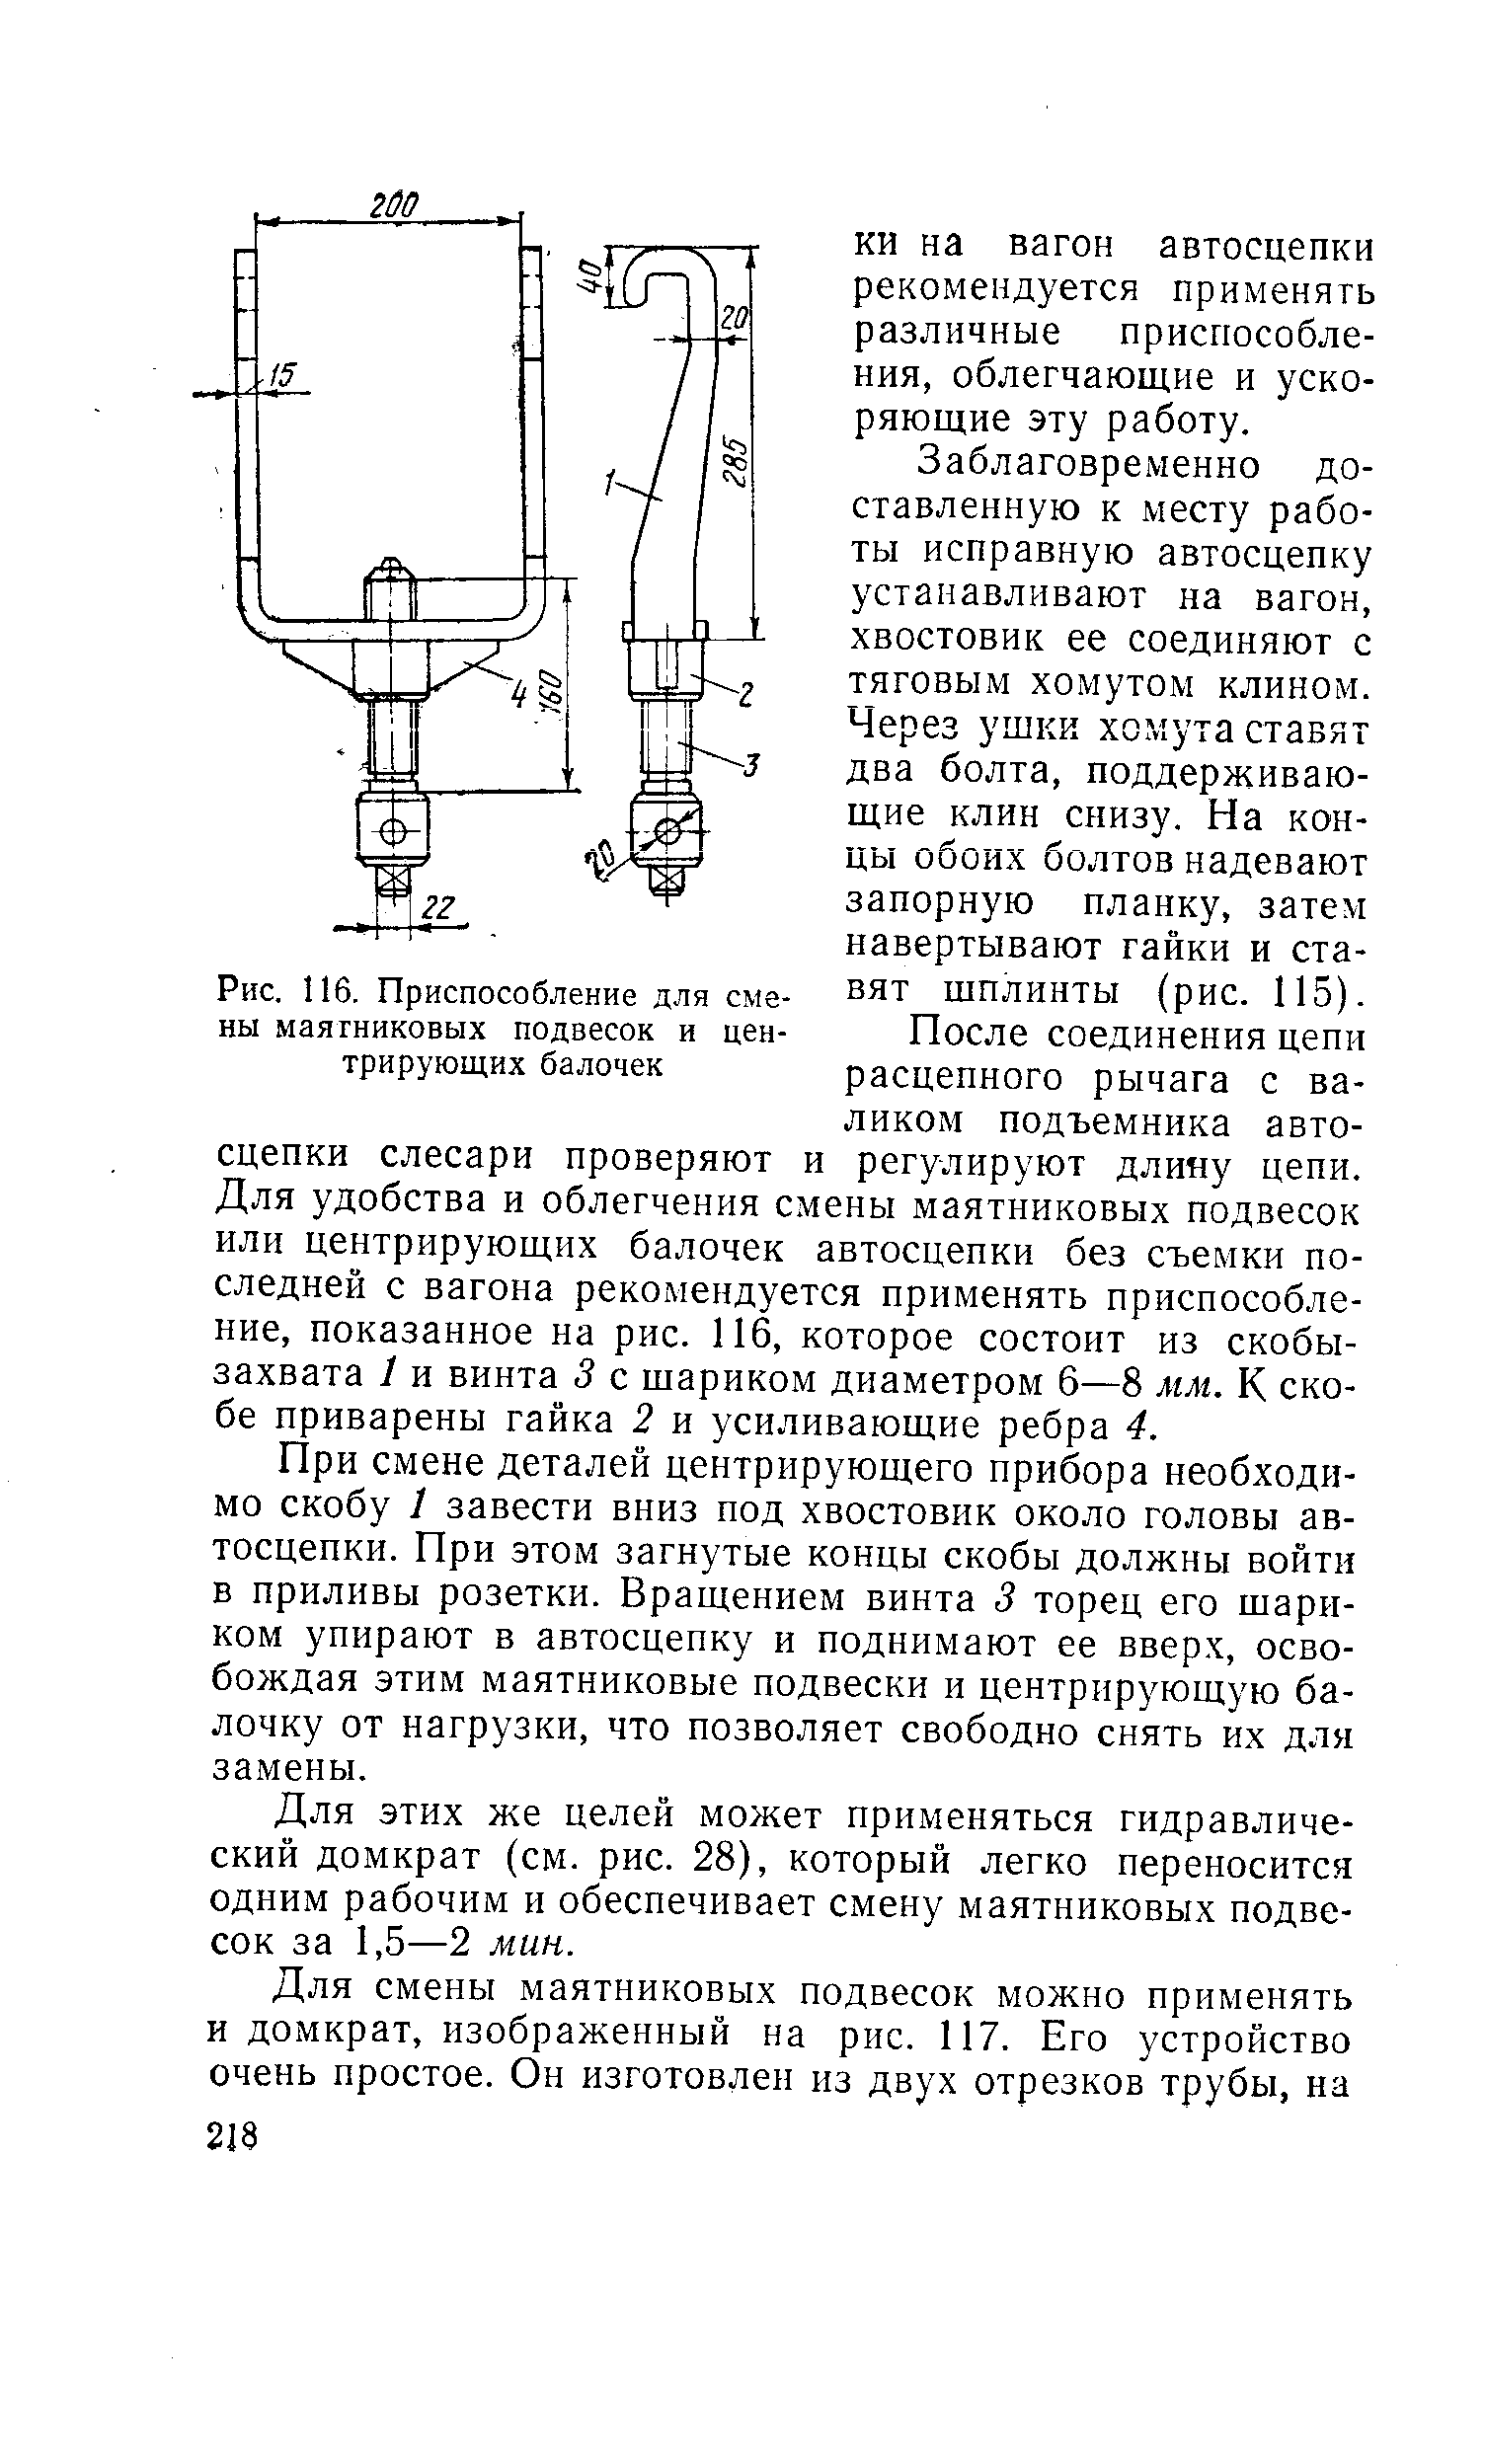 Рис. 116. Приспособление для смены маятниковых подвесок и центрирующих балочек
